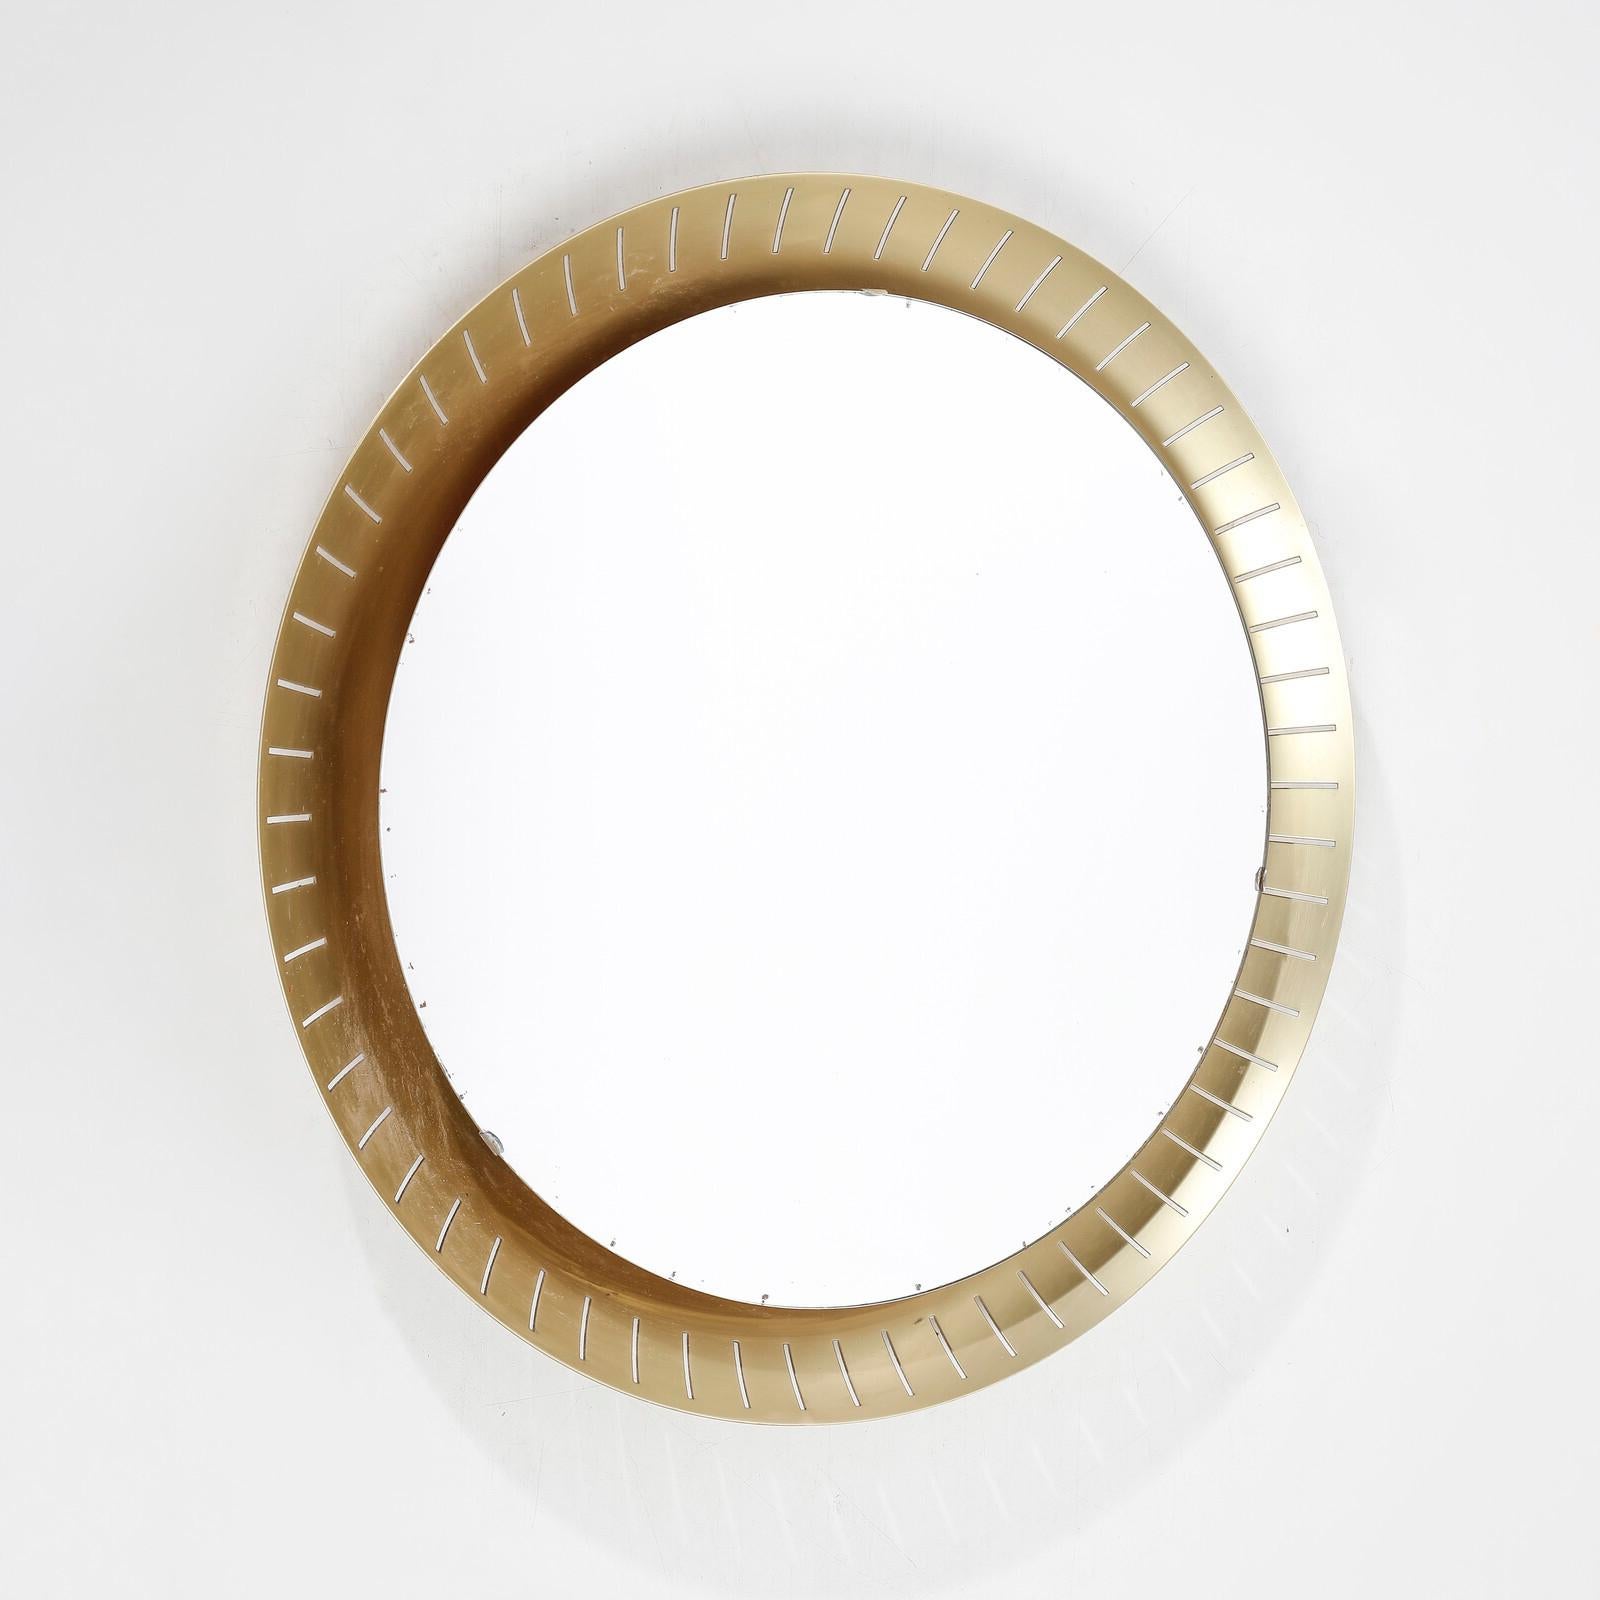 Un extraordinaire miroir rétroéclairé en forme de soleil, fabriqué en Italie dans les années 1950 et attribué à la célèbre société Stilnovo. Une œuvre raffinée et élégante qui donnera du style et du prestige à votre environnement